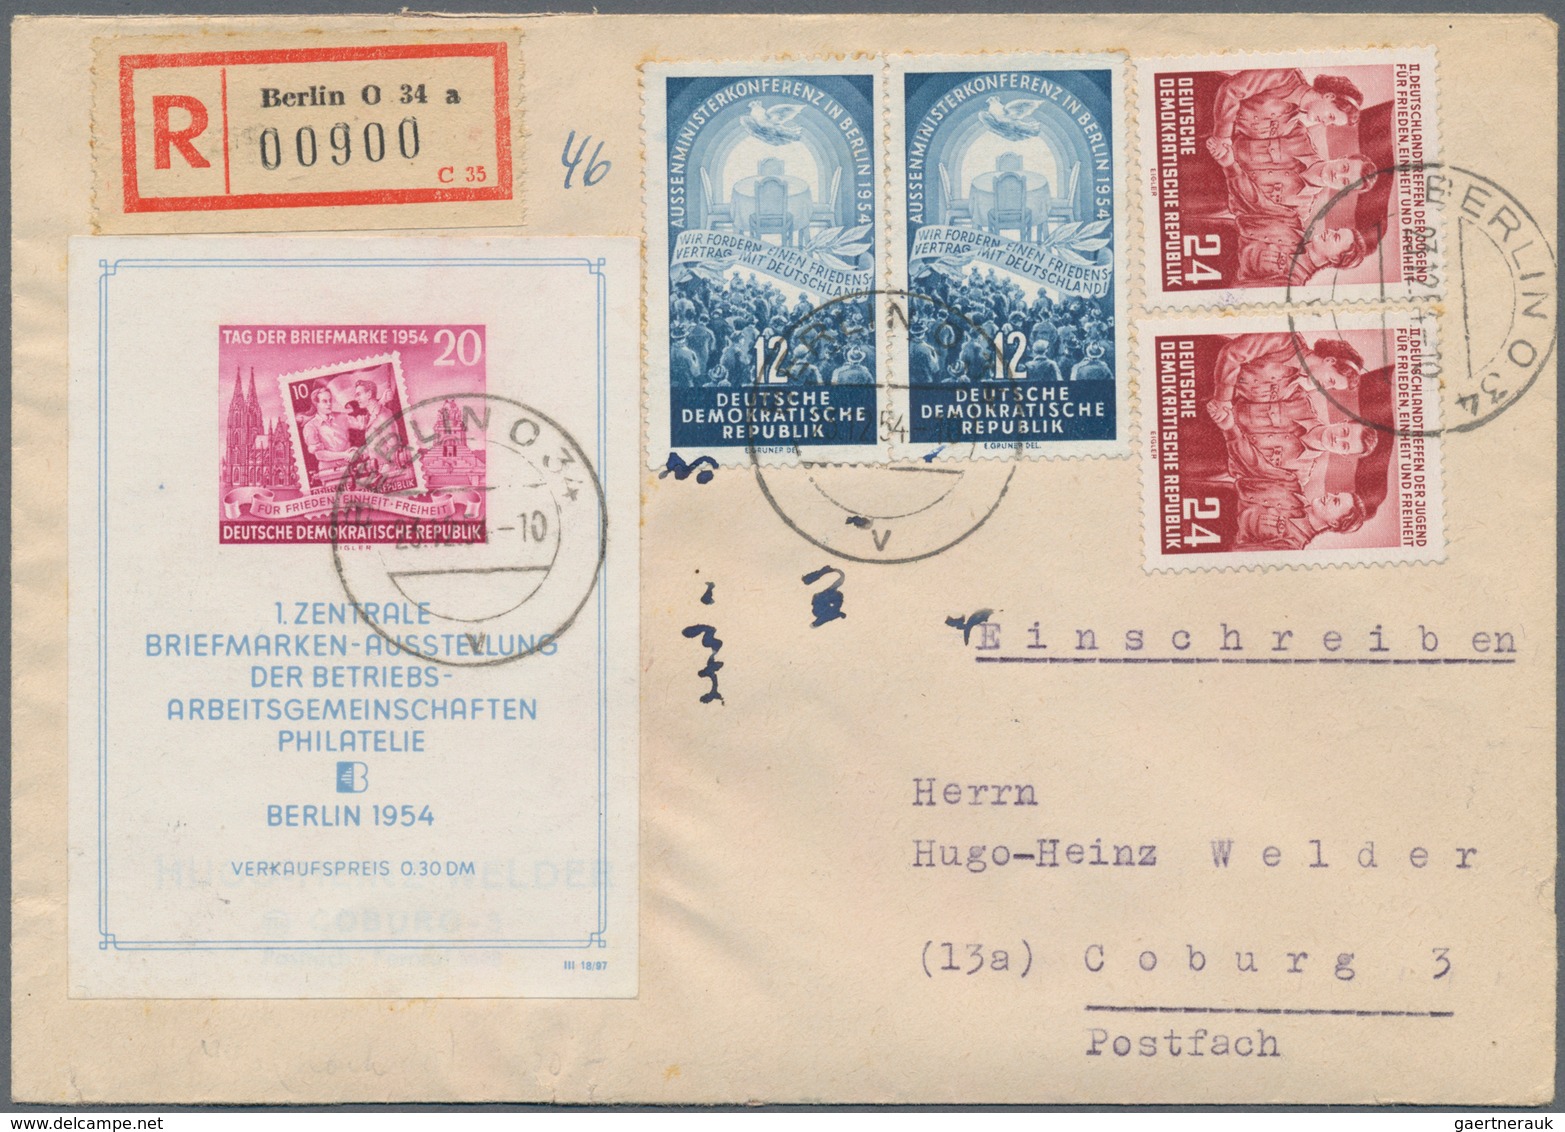 DDR: 1948/1990, vielseitige Partie von ca. 420 Briefen und Karten, dabei bessere Fankaturen der Anfa